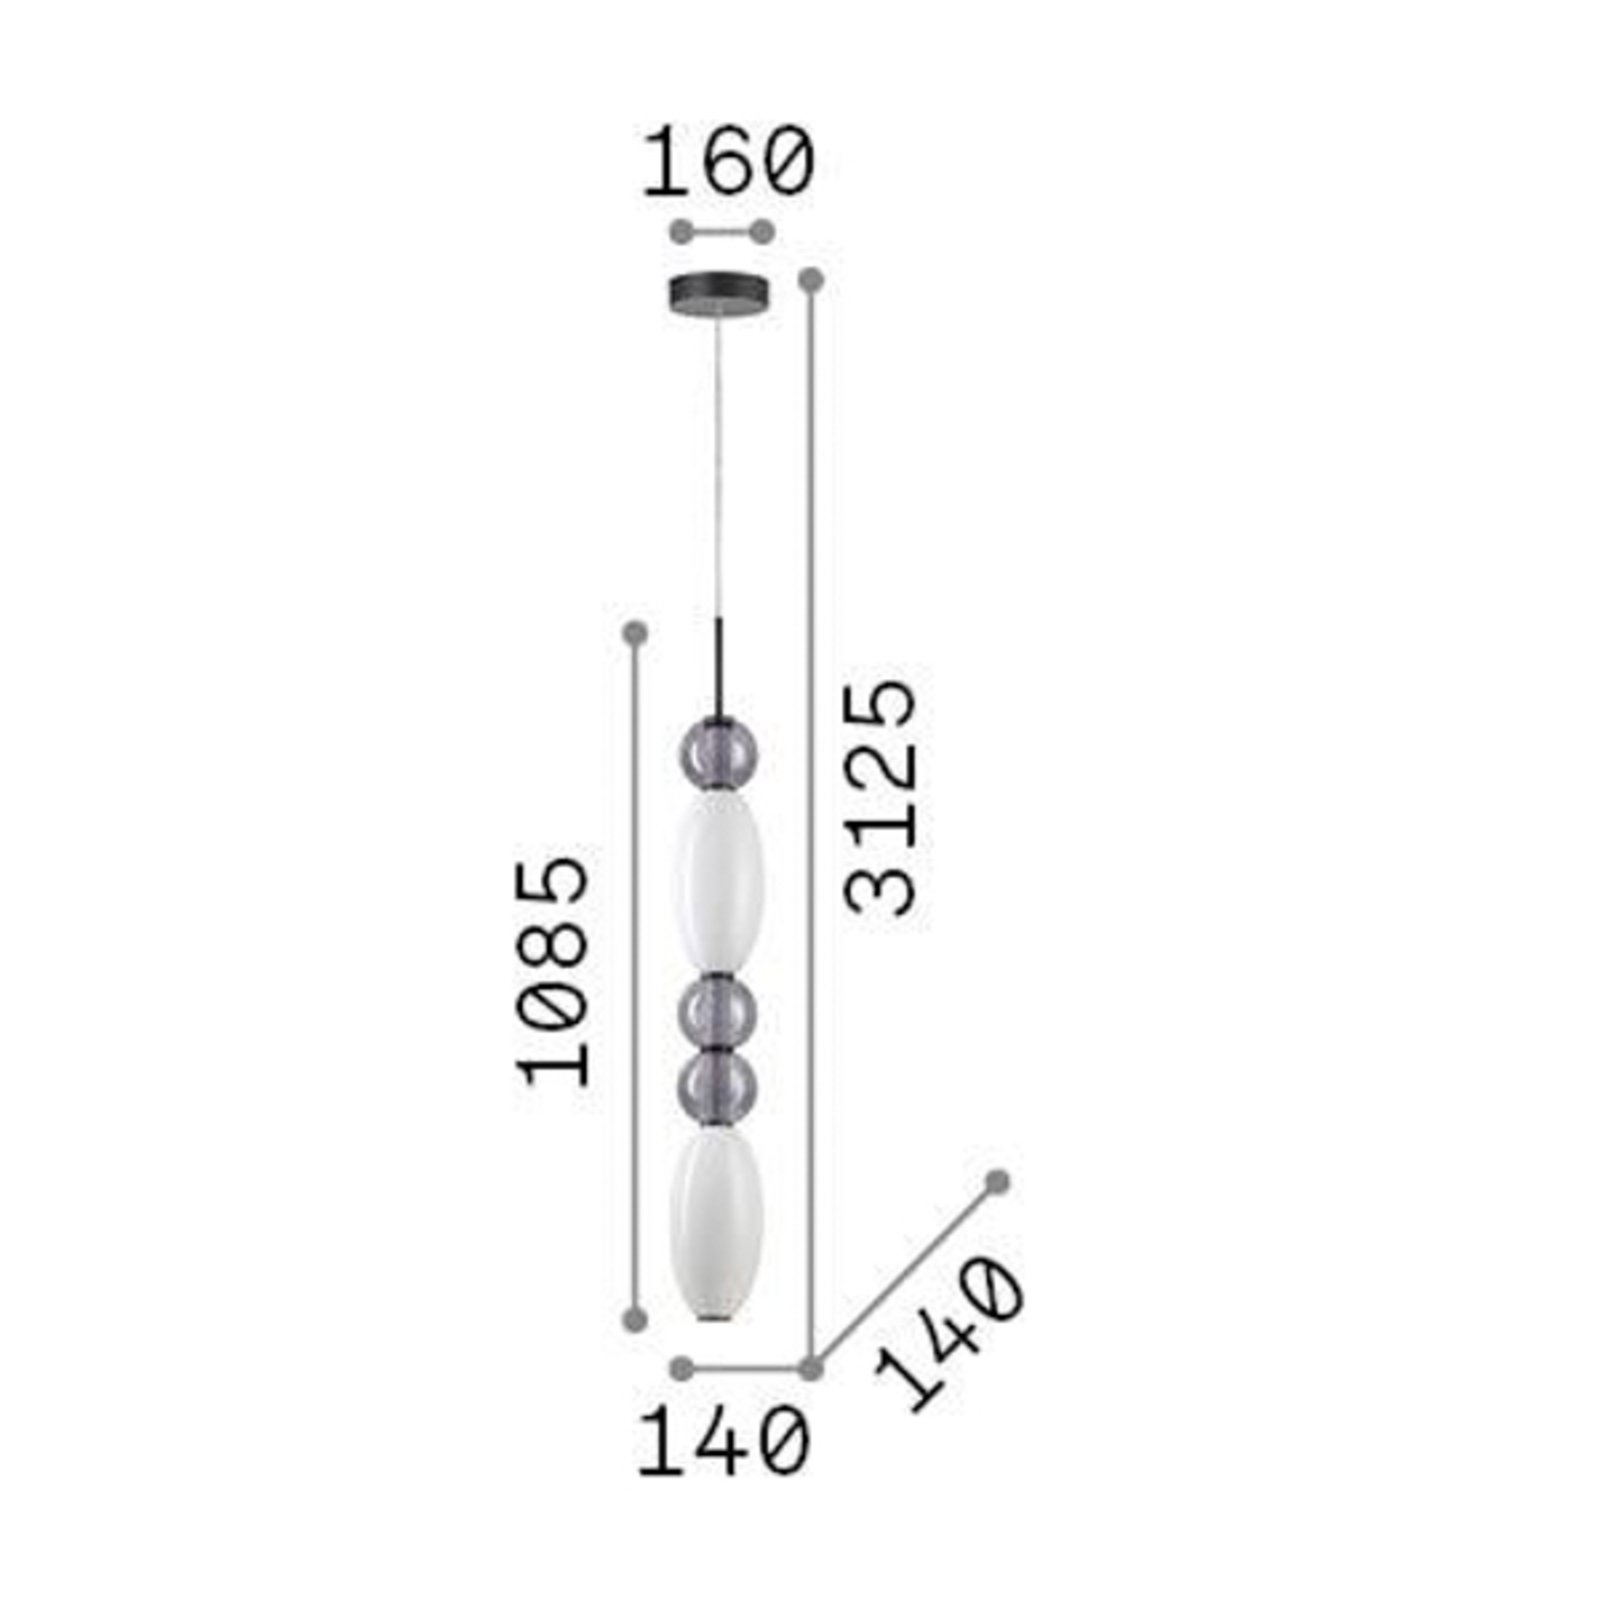 Ideal Lux LED висящо осветително тяло Lumiere-3, опал/сиво стъкло